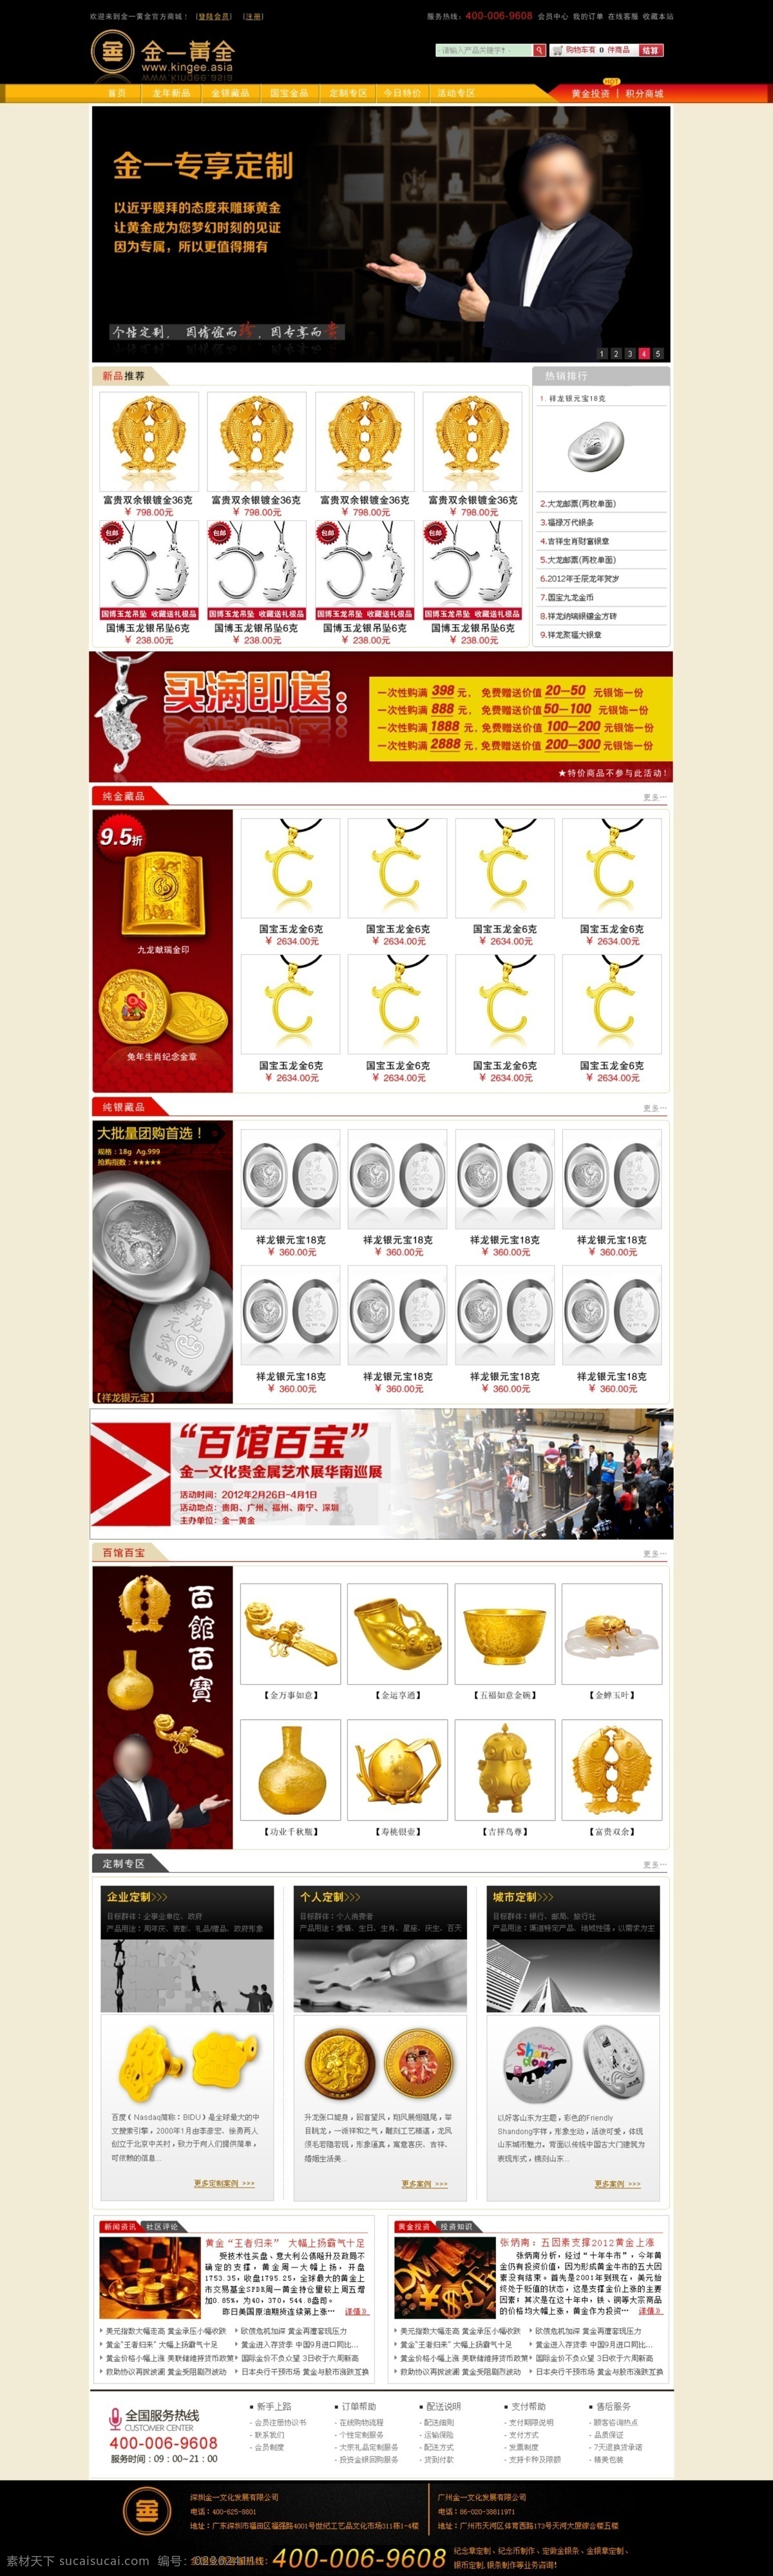 产品 公司网站 公司 网站 模板下载 古典 黄金 商城 网页模板 网站设计 中文模板 源文件 网页素材